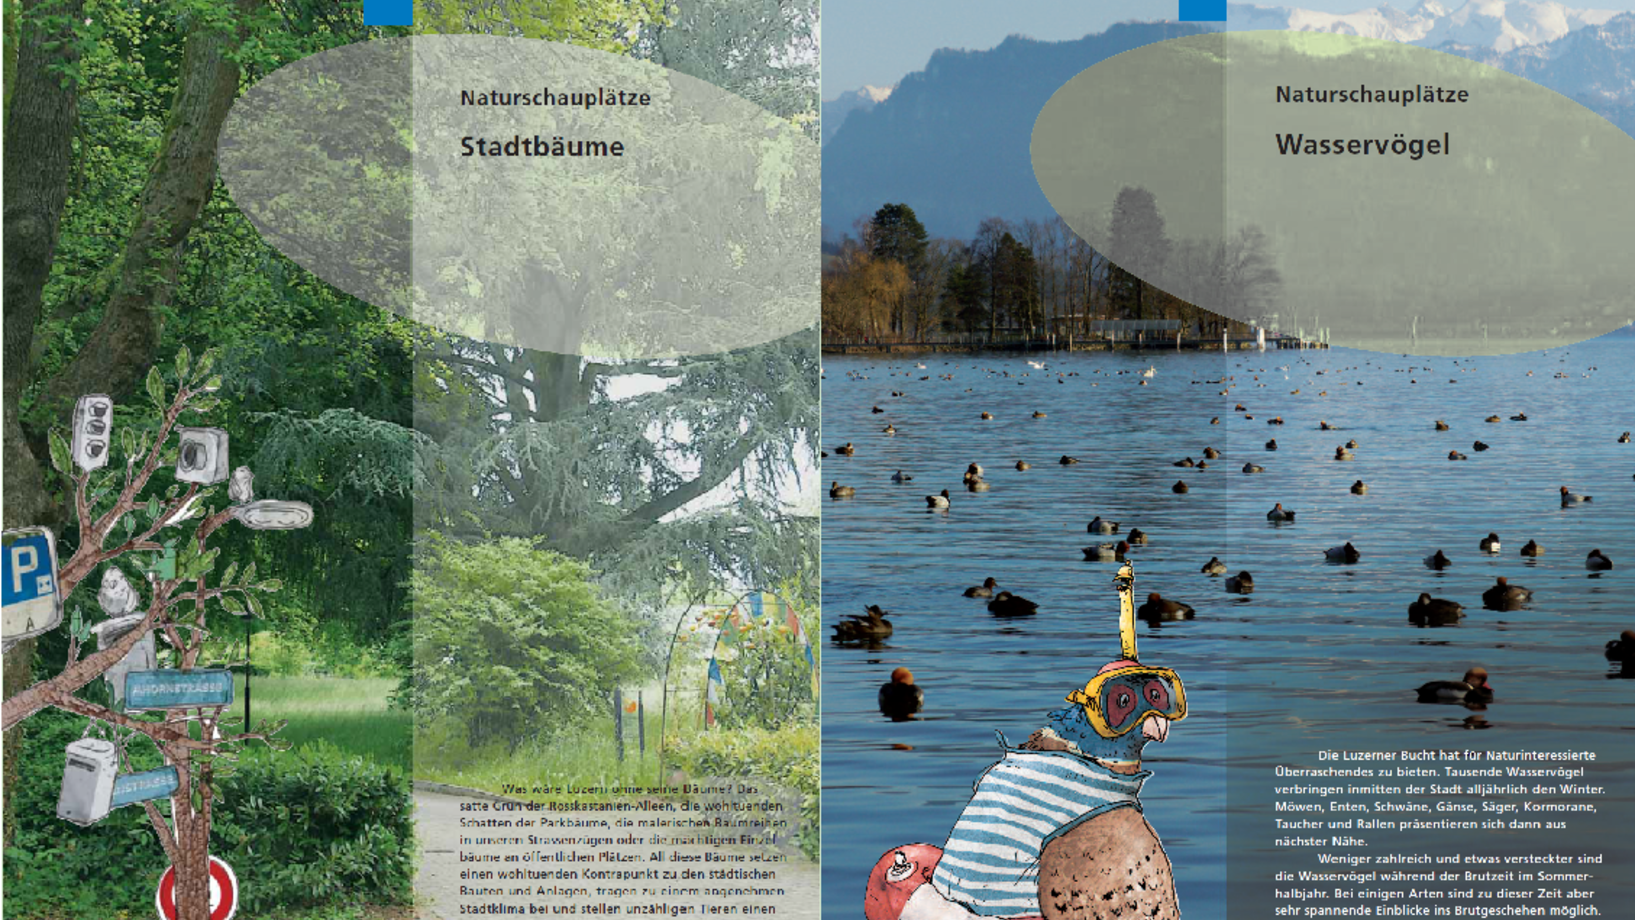 Titelseite der Naturschauplätze Broschüren Stadtbäume und Wasservögel